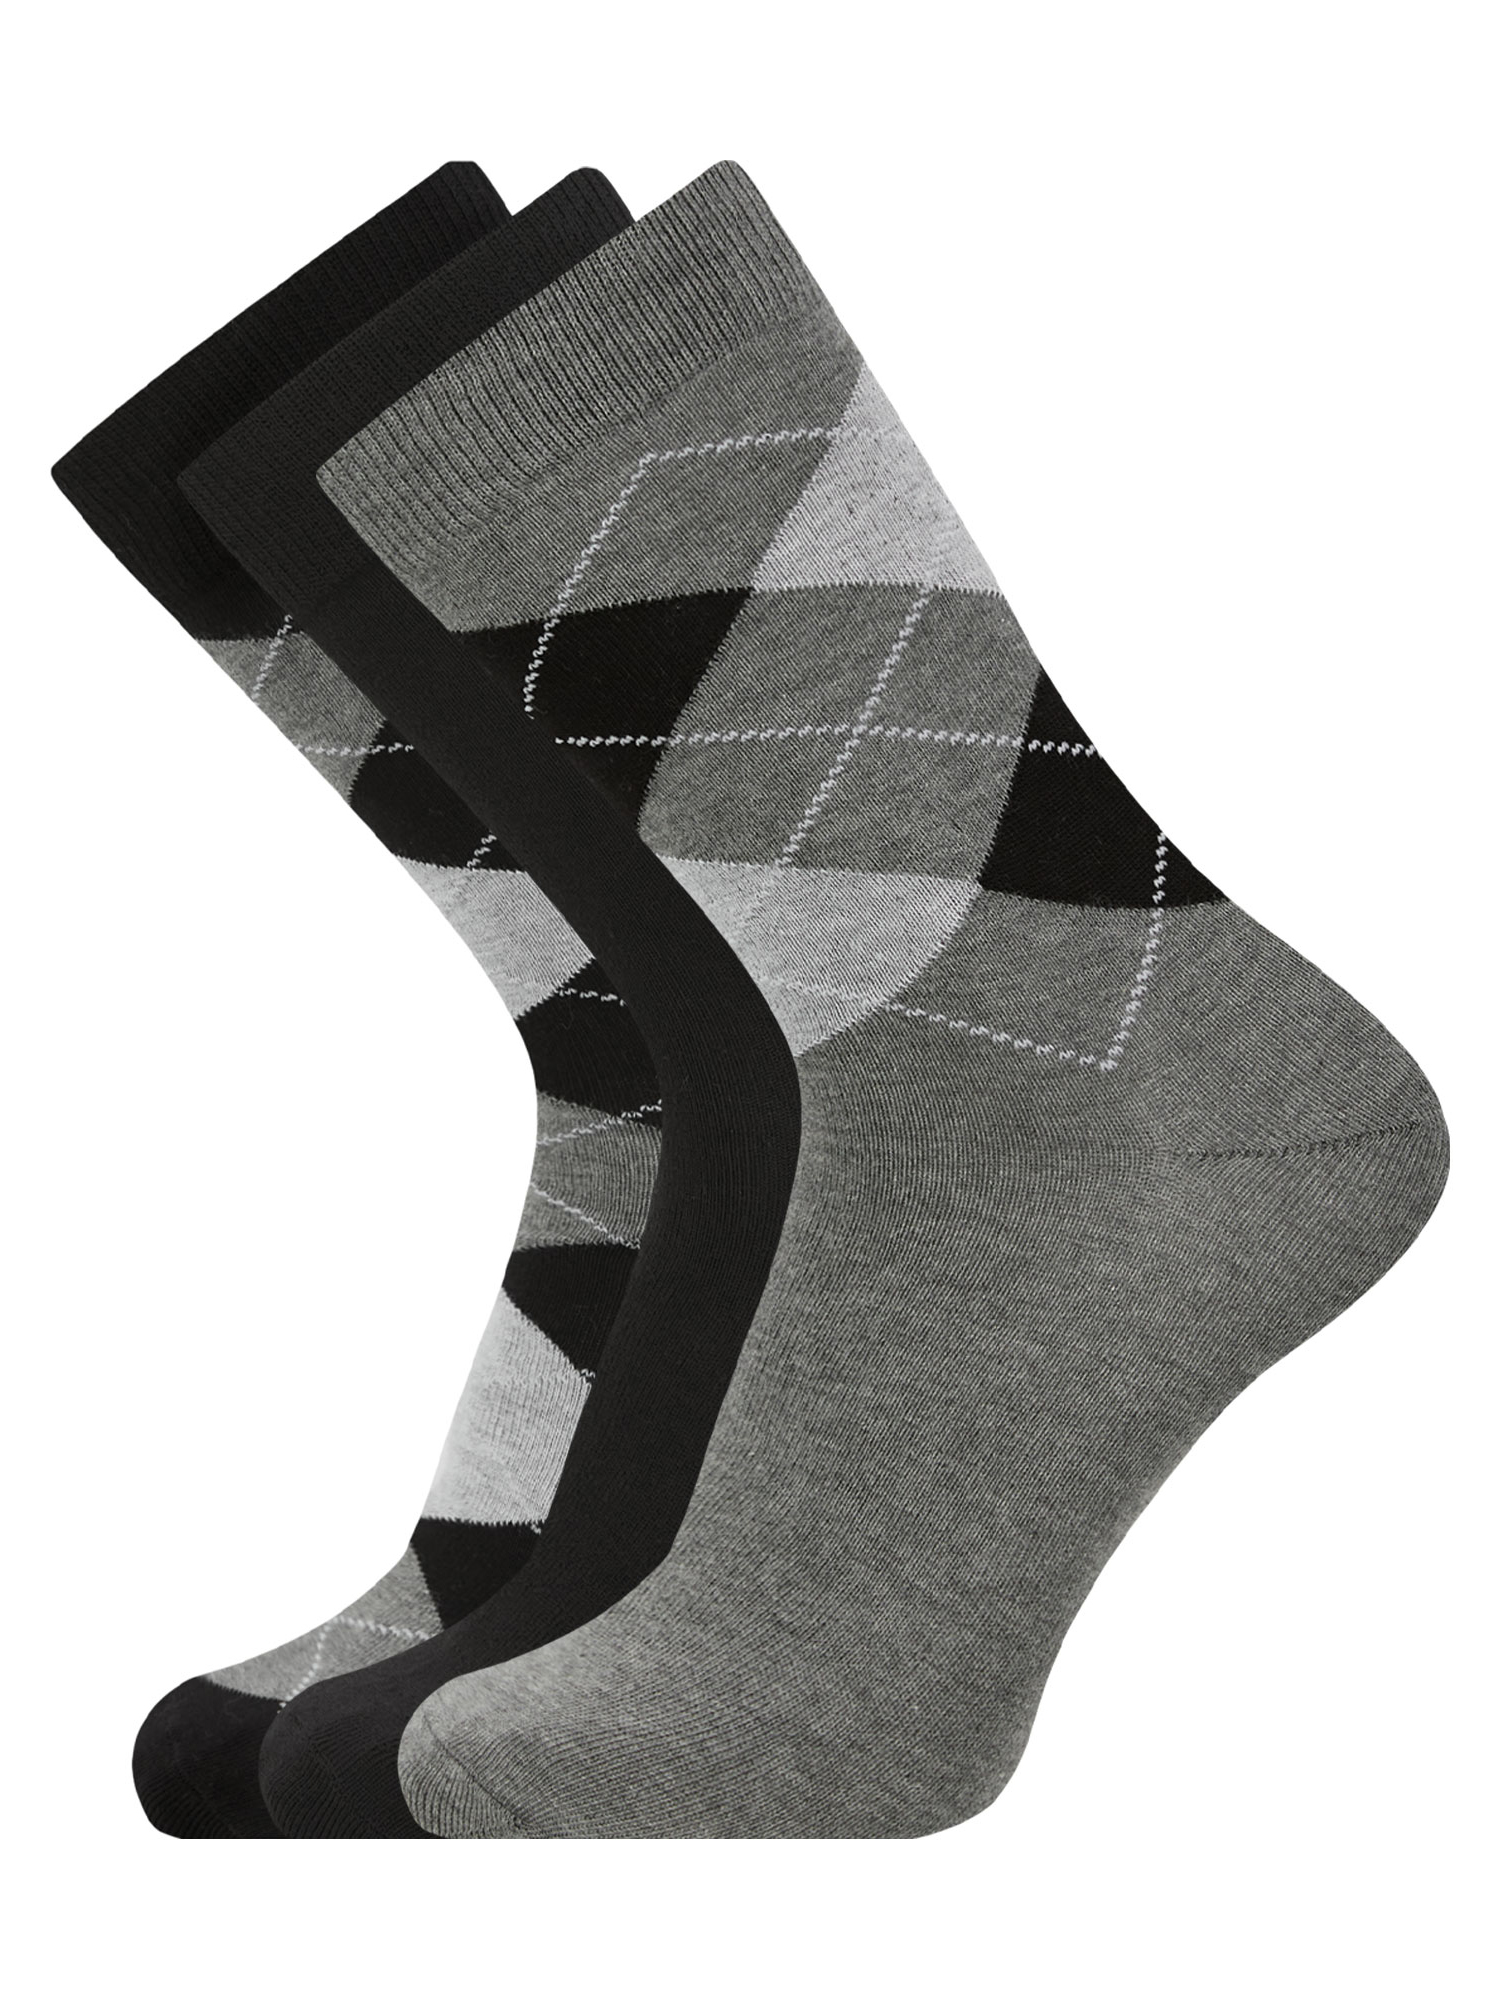 Комплект носков мужских oodji 7B233001T3 разноцветных 40-43